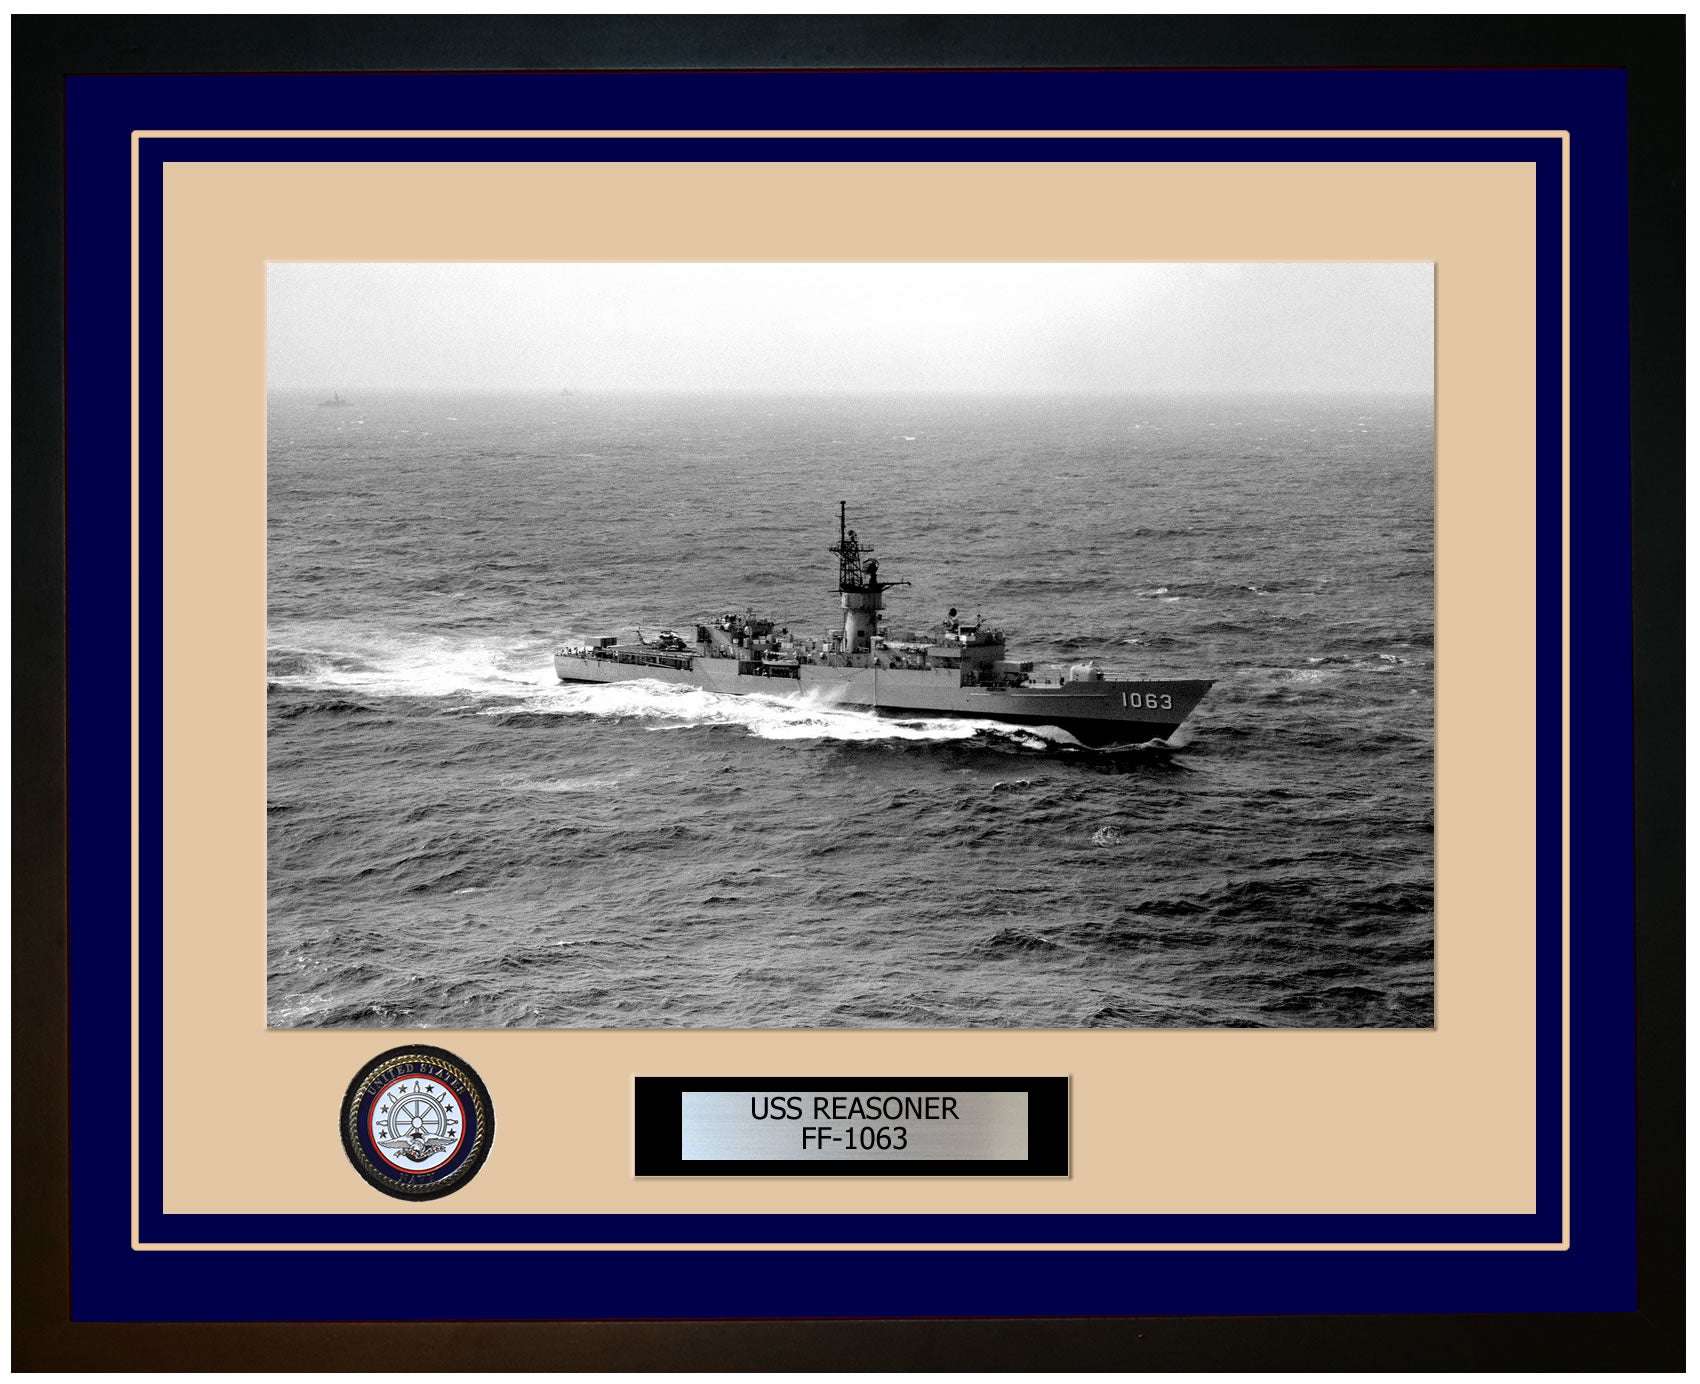 USS REASONER FF-1063 Framed Navy Ship Photo Blue